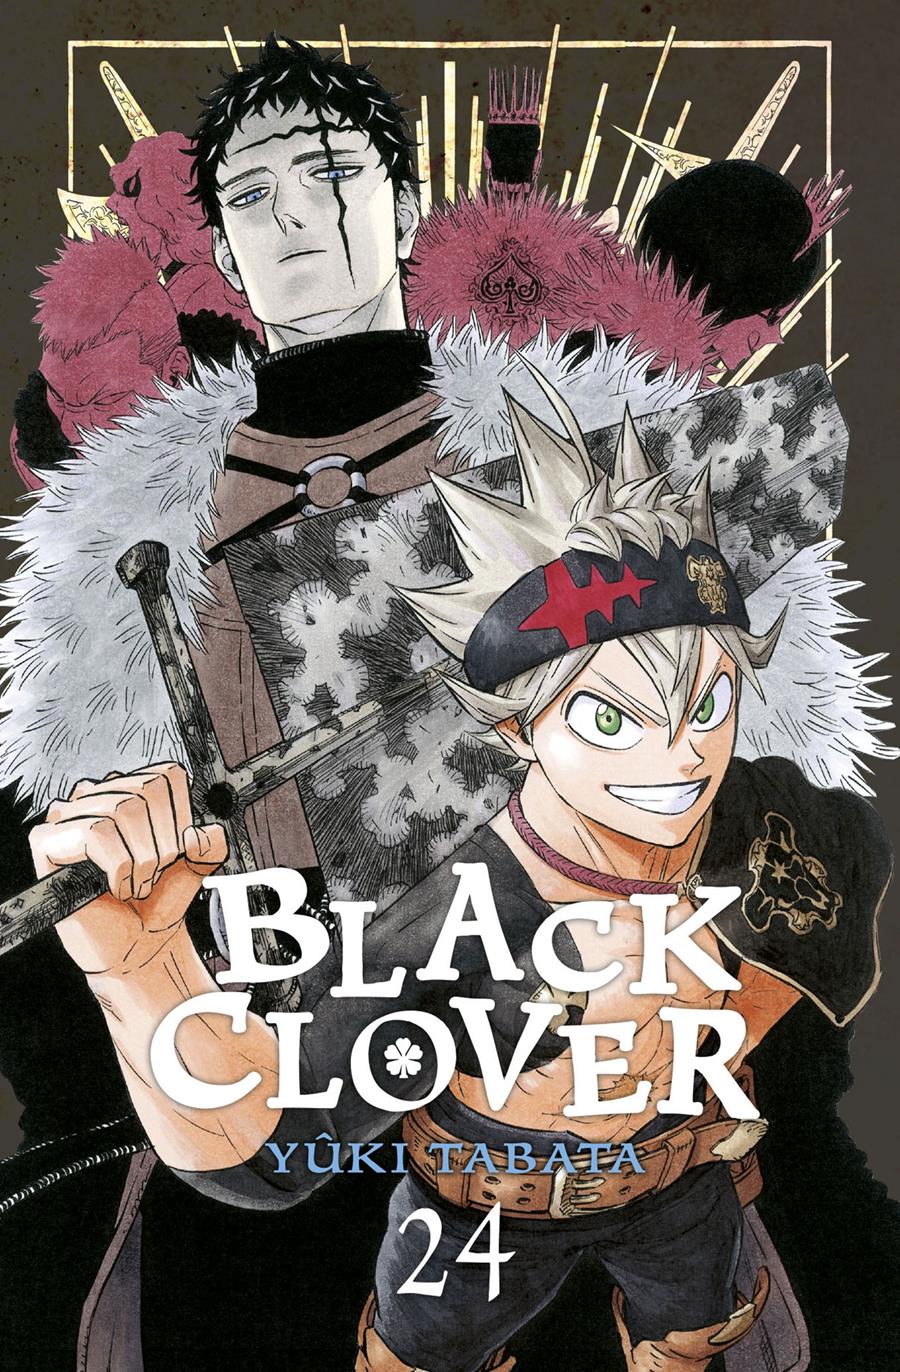 Black Clover 24 | N0422-NOR07 | Yuki Tabata | Terra de Còmic - Tu tienda de cómics online especializada en cómics, manga y merchandising